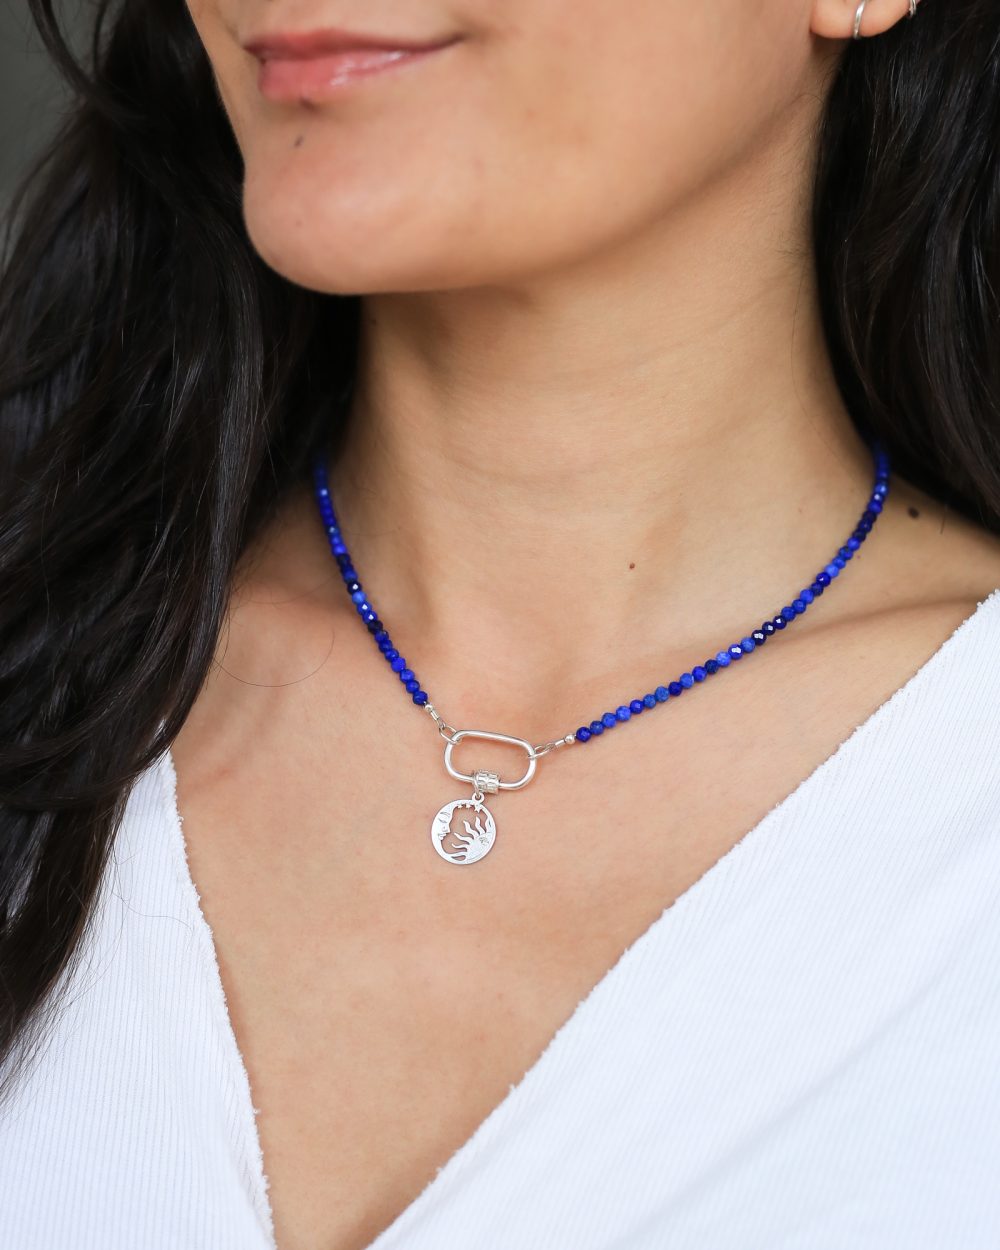 om de hals een diepblauwe lapis lazuli edelsteen ketting met aan de voorkant een grote zilveren schroefsluiting en een zilveren zon-en maan hanger